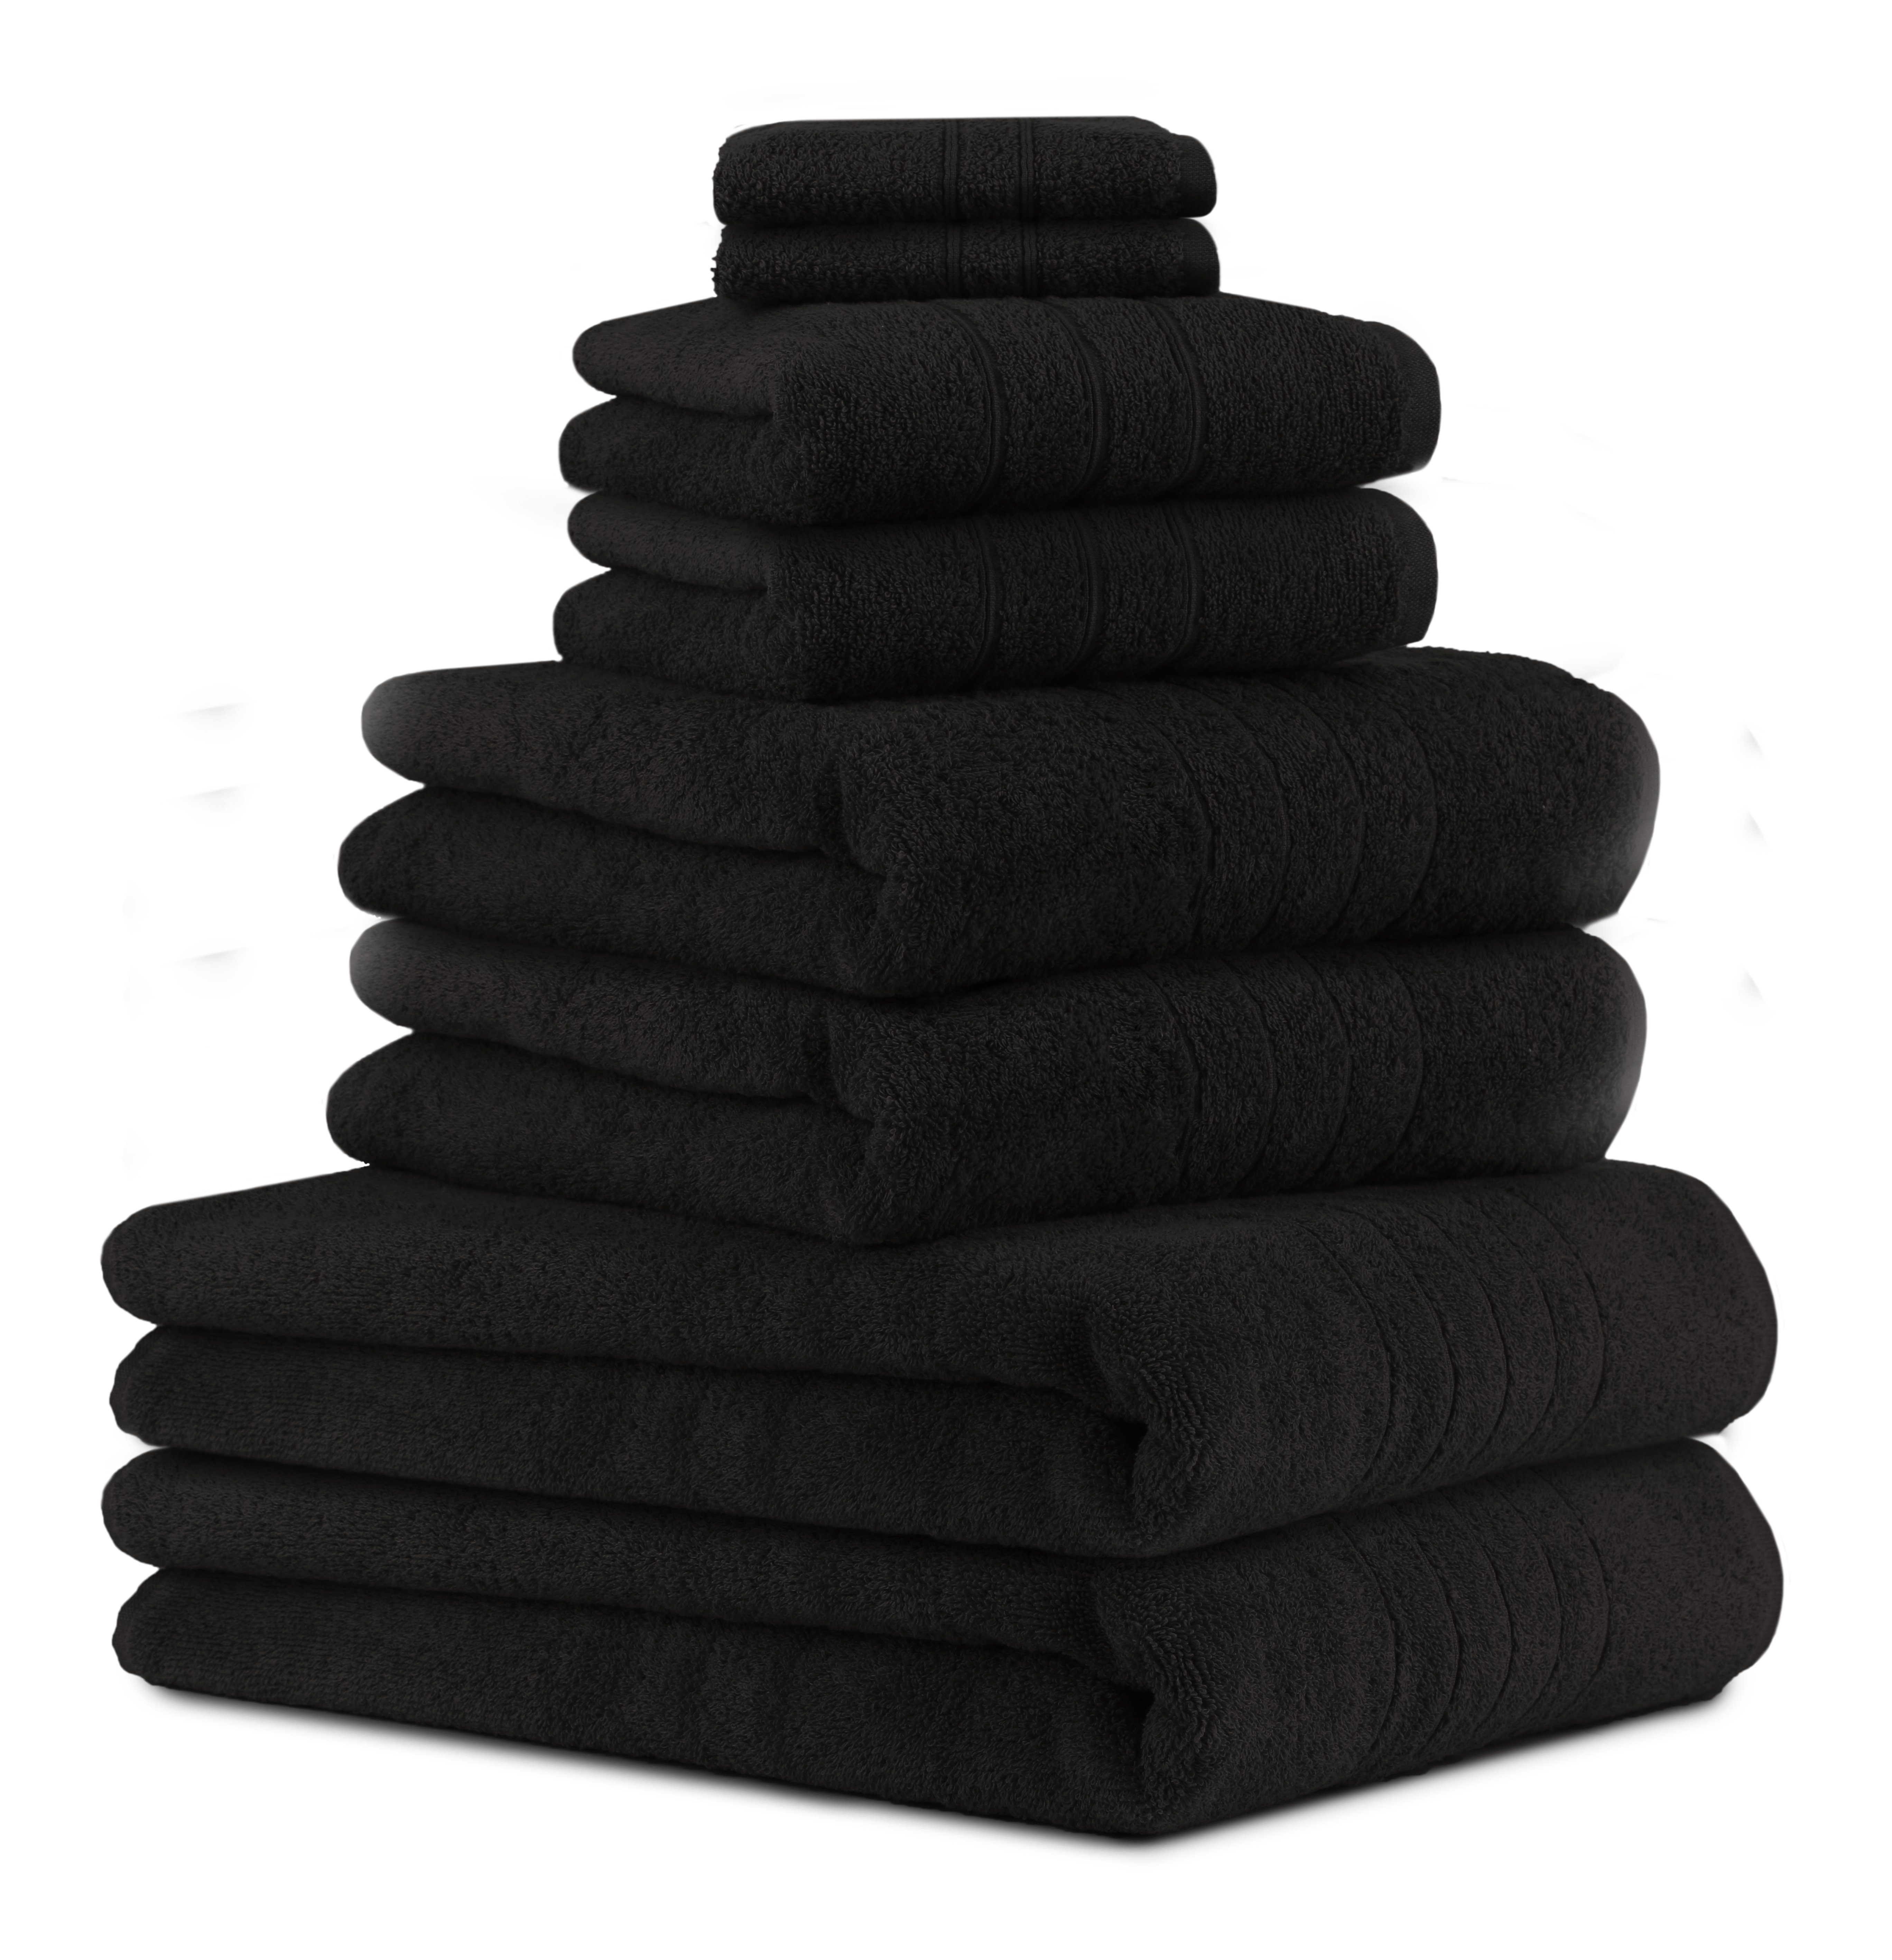 Betz Handtuch Set 8-TLG Handtuch-Set Deluxe 100% Baumwolle 2 Badetücher 2 Duschtücher 2 Handtücher 2 Seiftücher, 100% Baumwolle, (8-tlg) schwarz